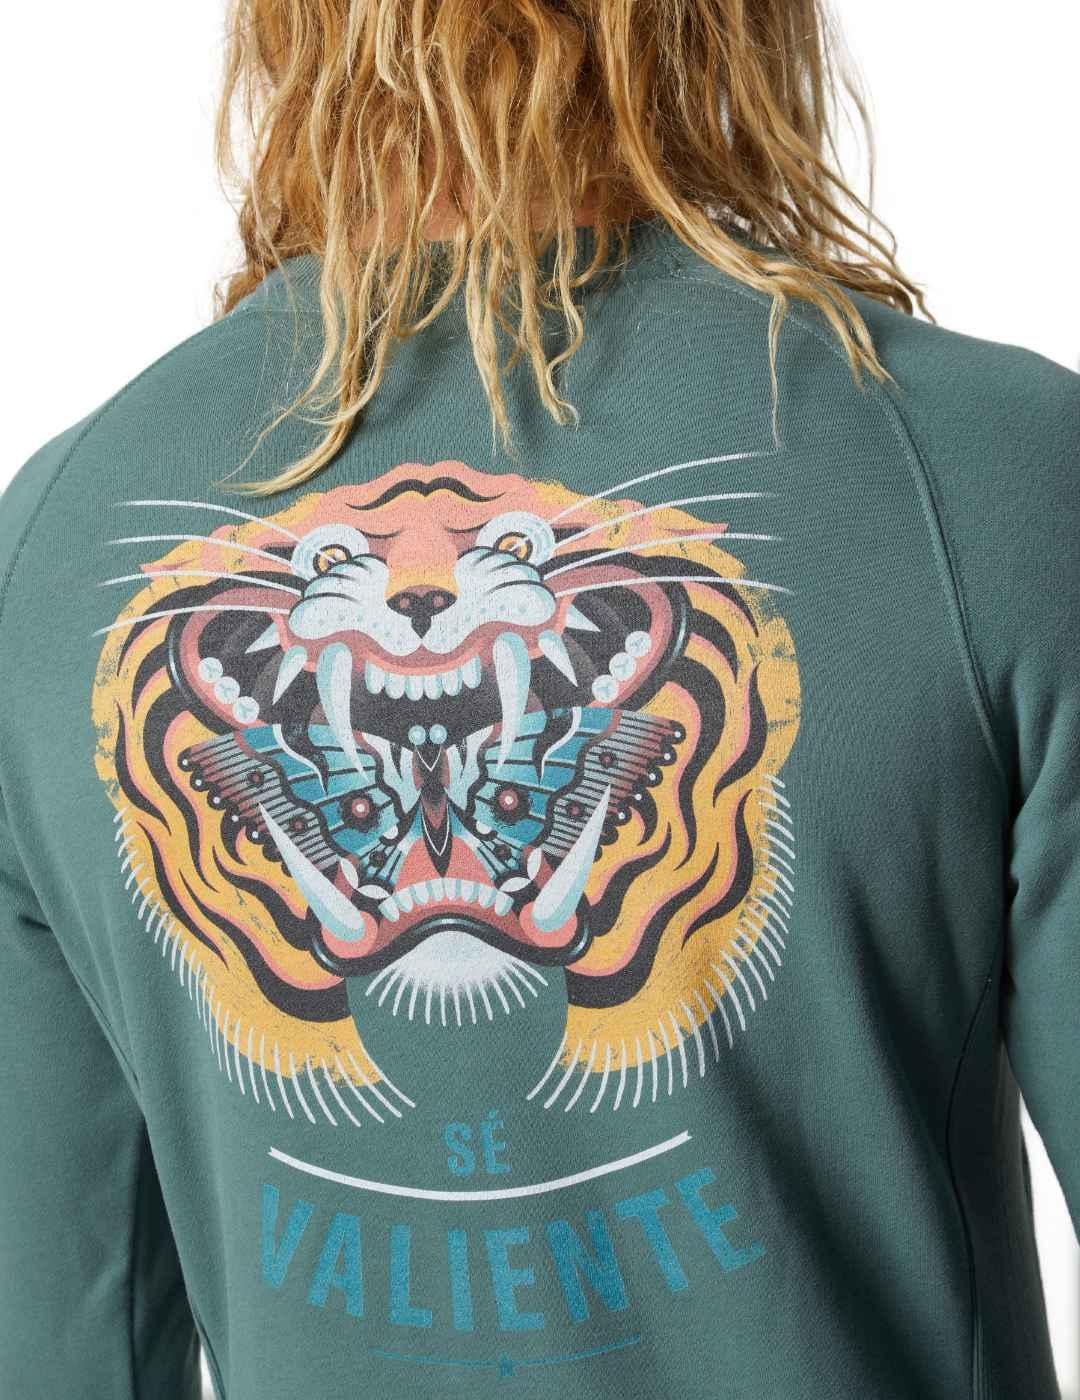 Sudadera Altonadock verde estampado tigre espalda de hombre